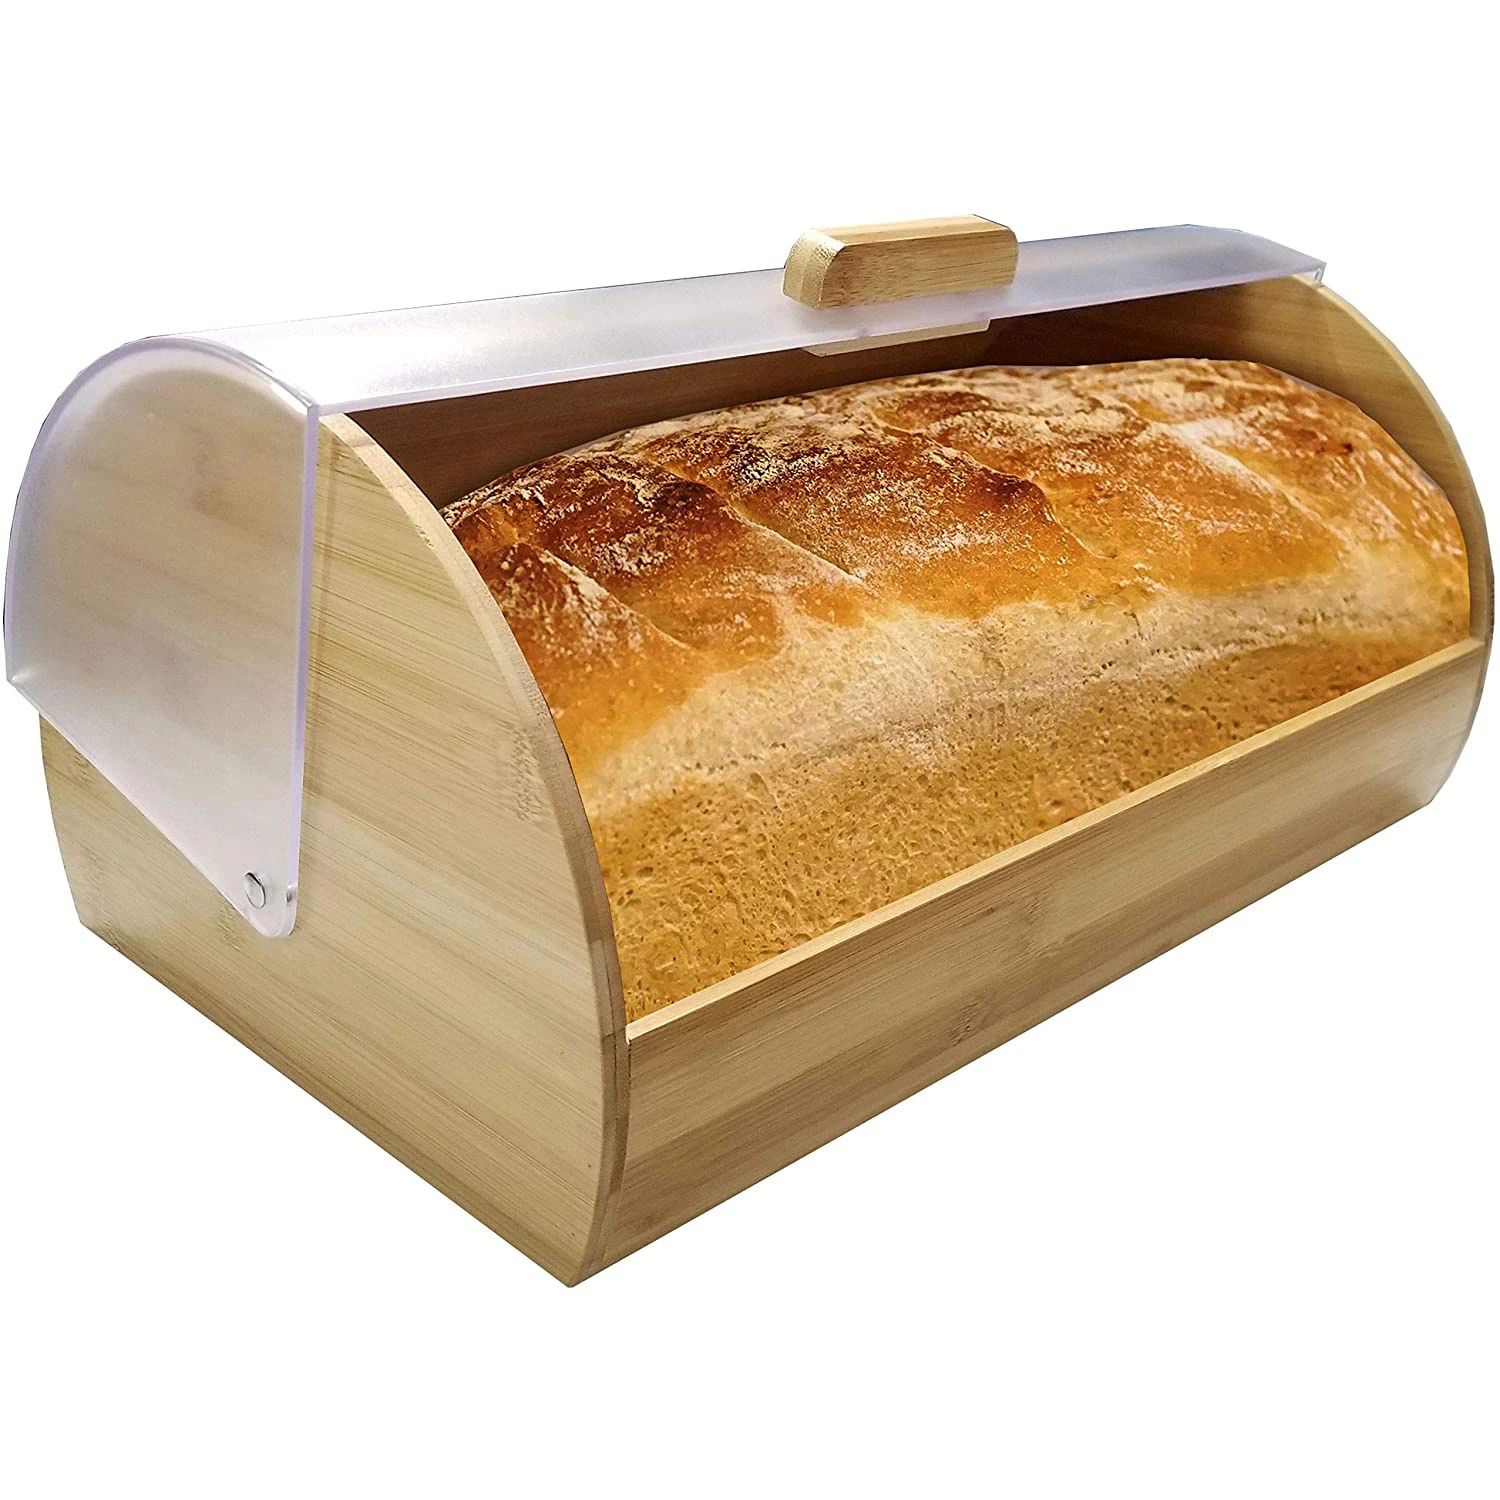 Bamboo Bread Box Large Bread Box for Kitchen Countertop Farmhouse Retro Bread Box W/Clear Roll Top